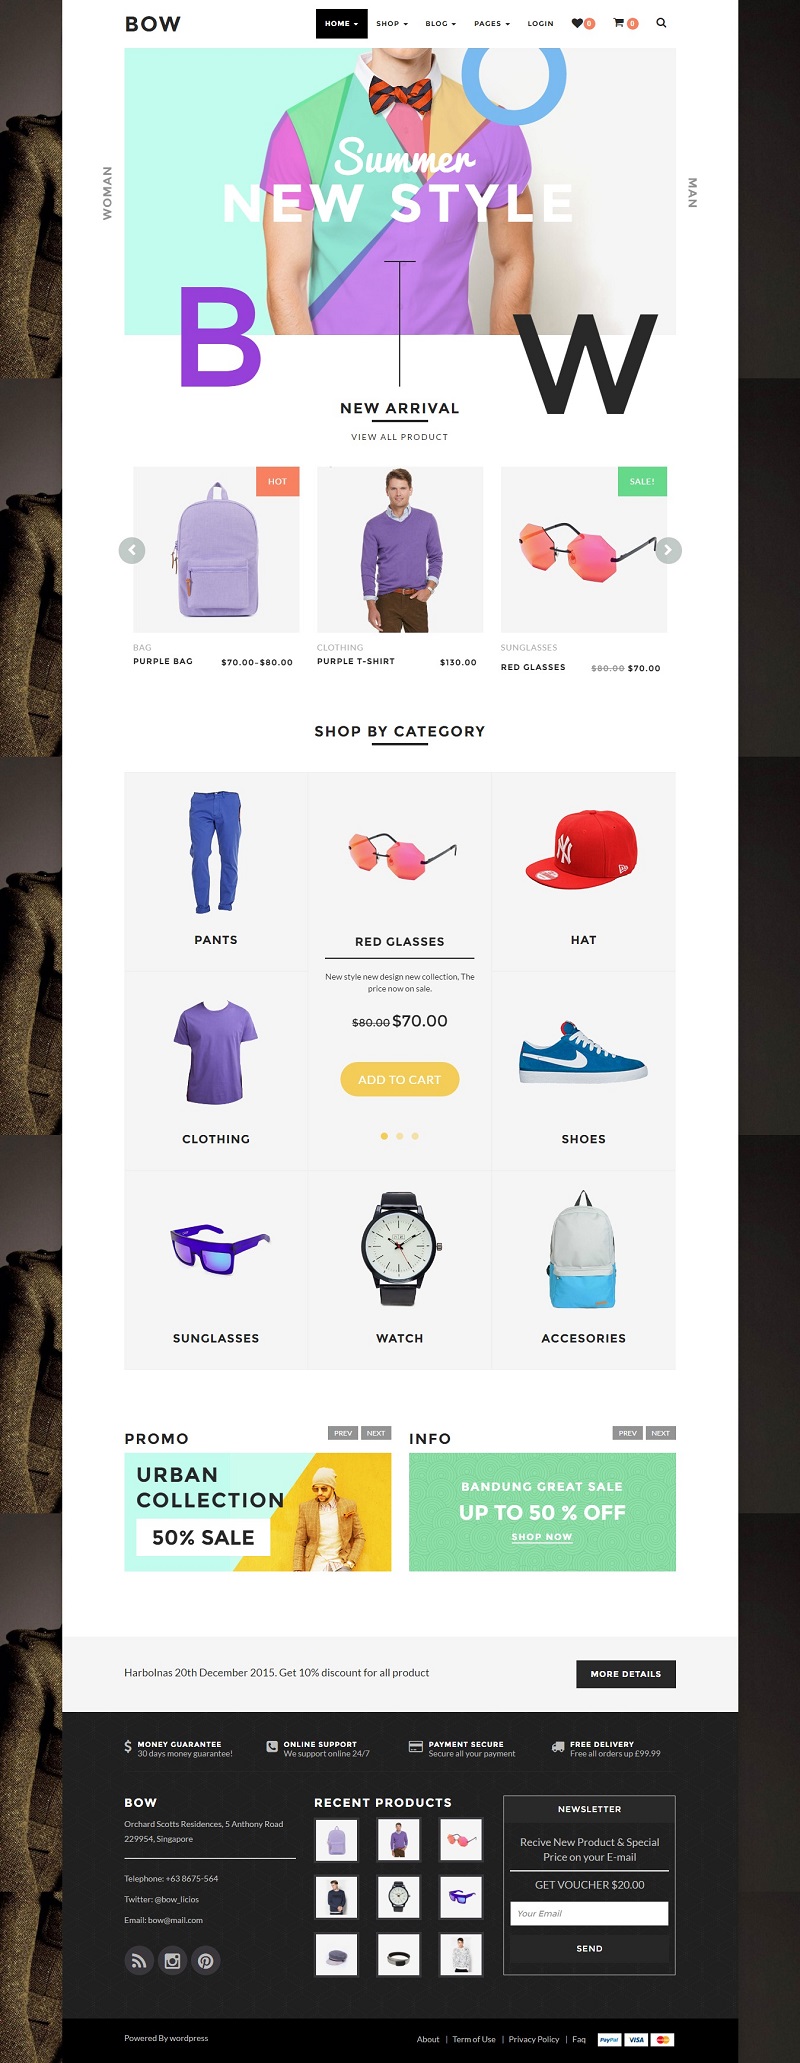 thiết kế web giá rẻ bán mũ nón thời trang